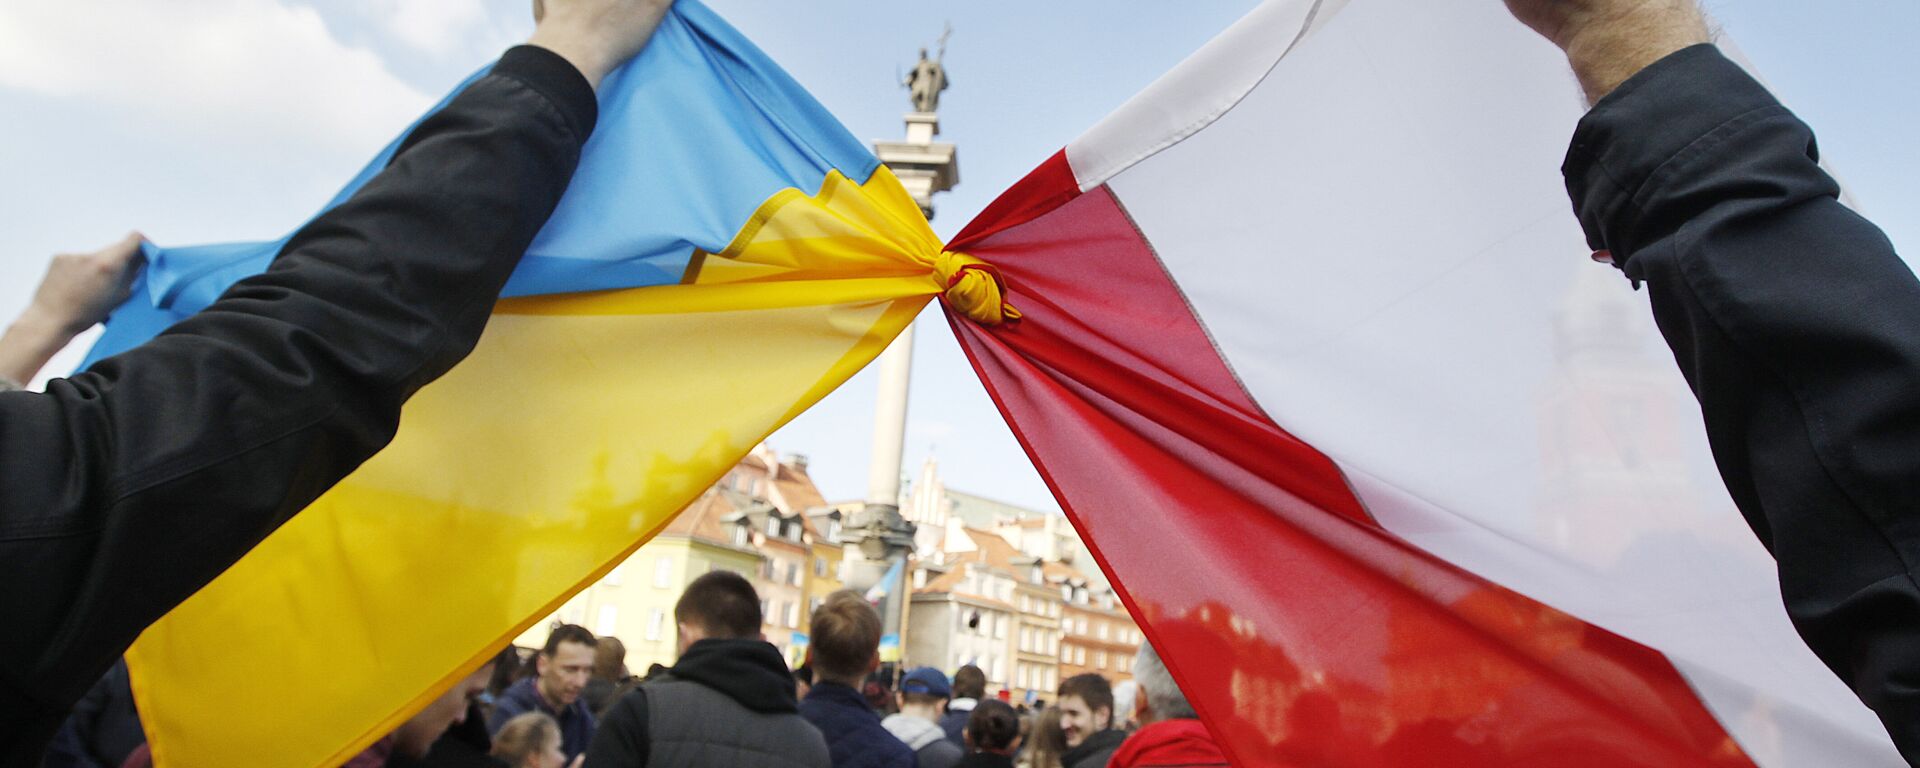 Pessoas seguram bandeiras polonesa (à direita) e ucraniana amarradas durante uma manifestação de apoio ao movimento de oposição na Ucrânia, em Varsóvia, Polônia, 23 de fevereiro de 2014 - Sputnik Brasil, 1920, 28.04.2022